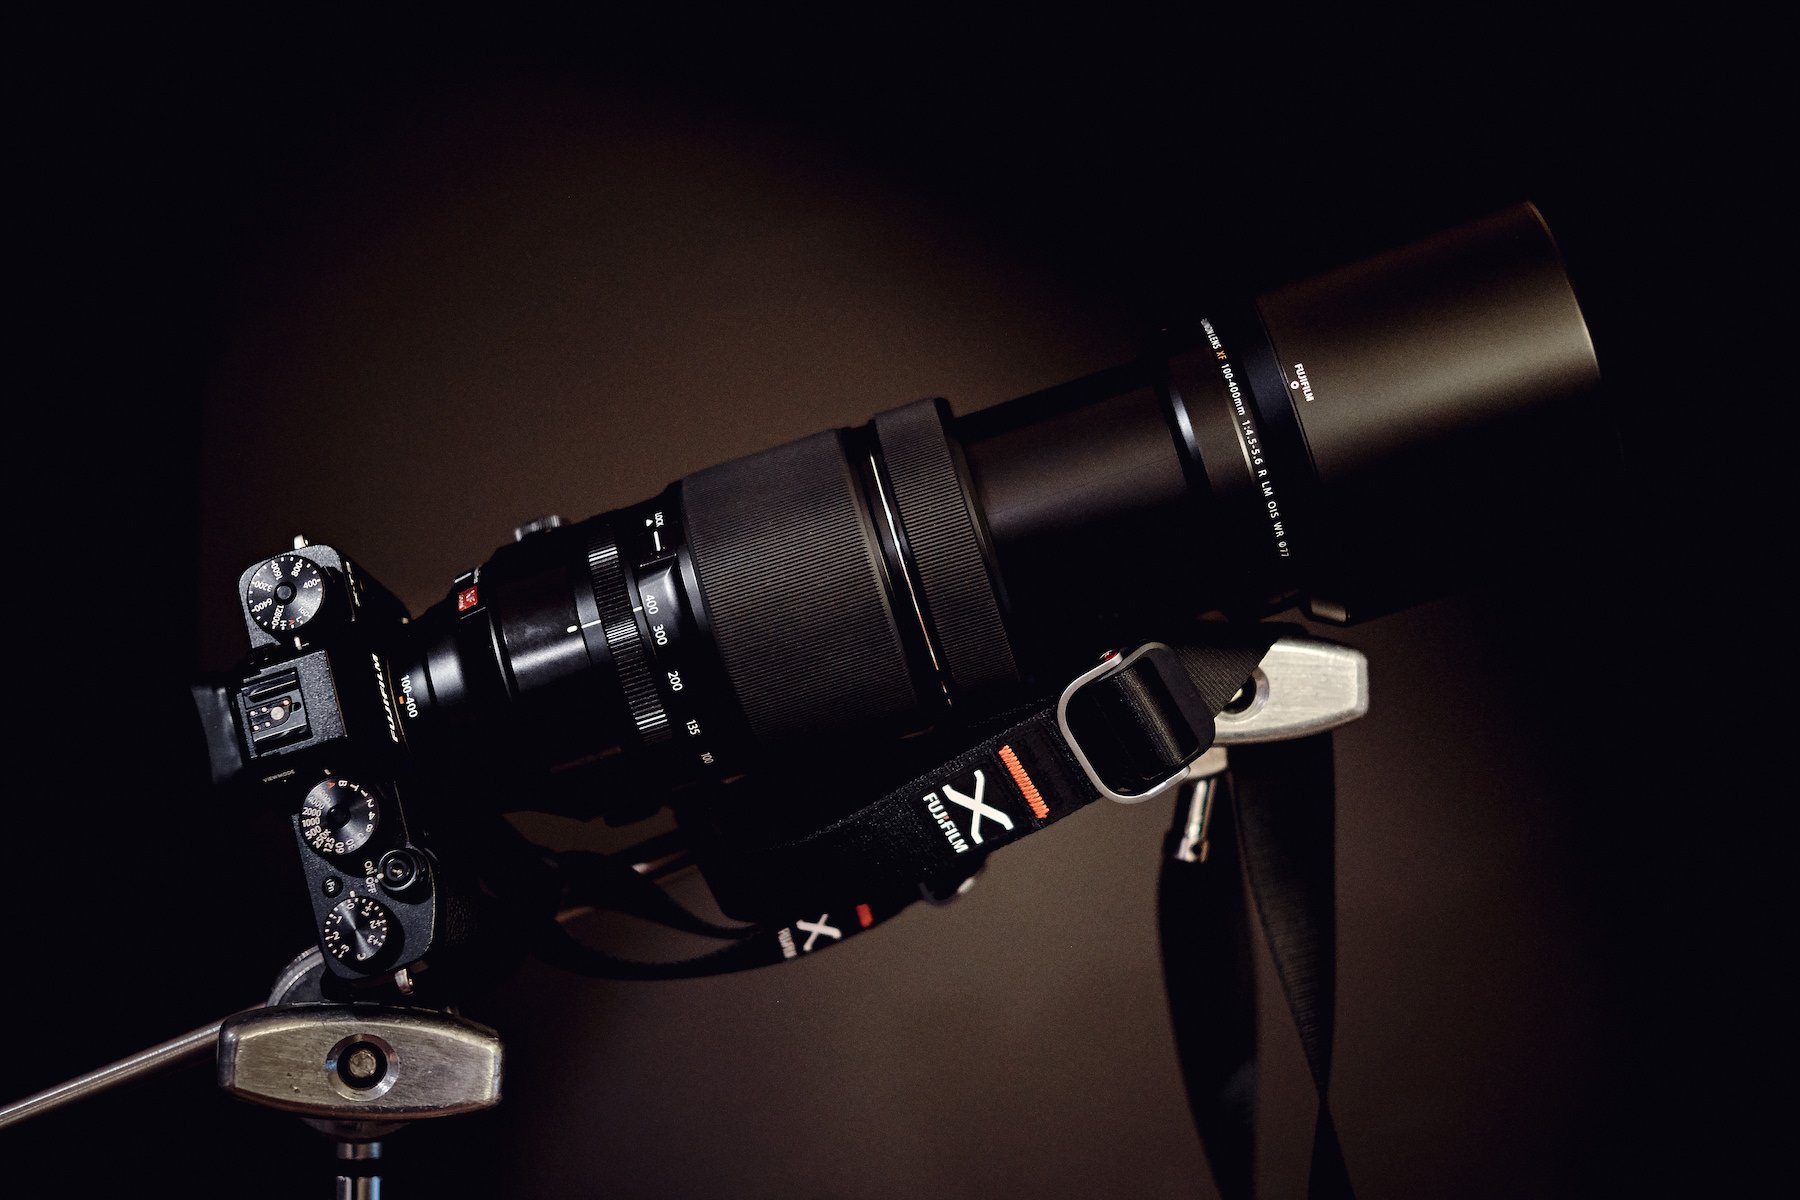 Sỡ hữu máy ảnh Fujifilm X-T3 với ống kính XF 35mm F1.4 với khuyến mãi cực sốc giảm 9 triệu đồng tại WinWinStore